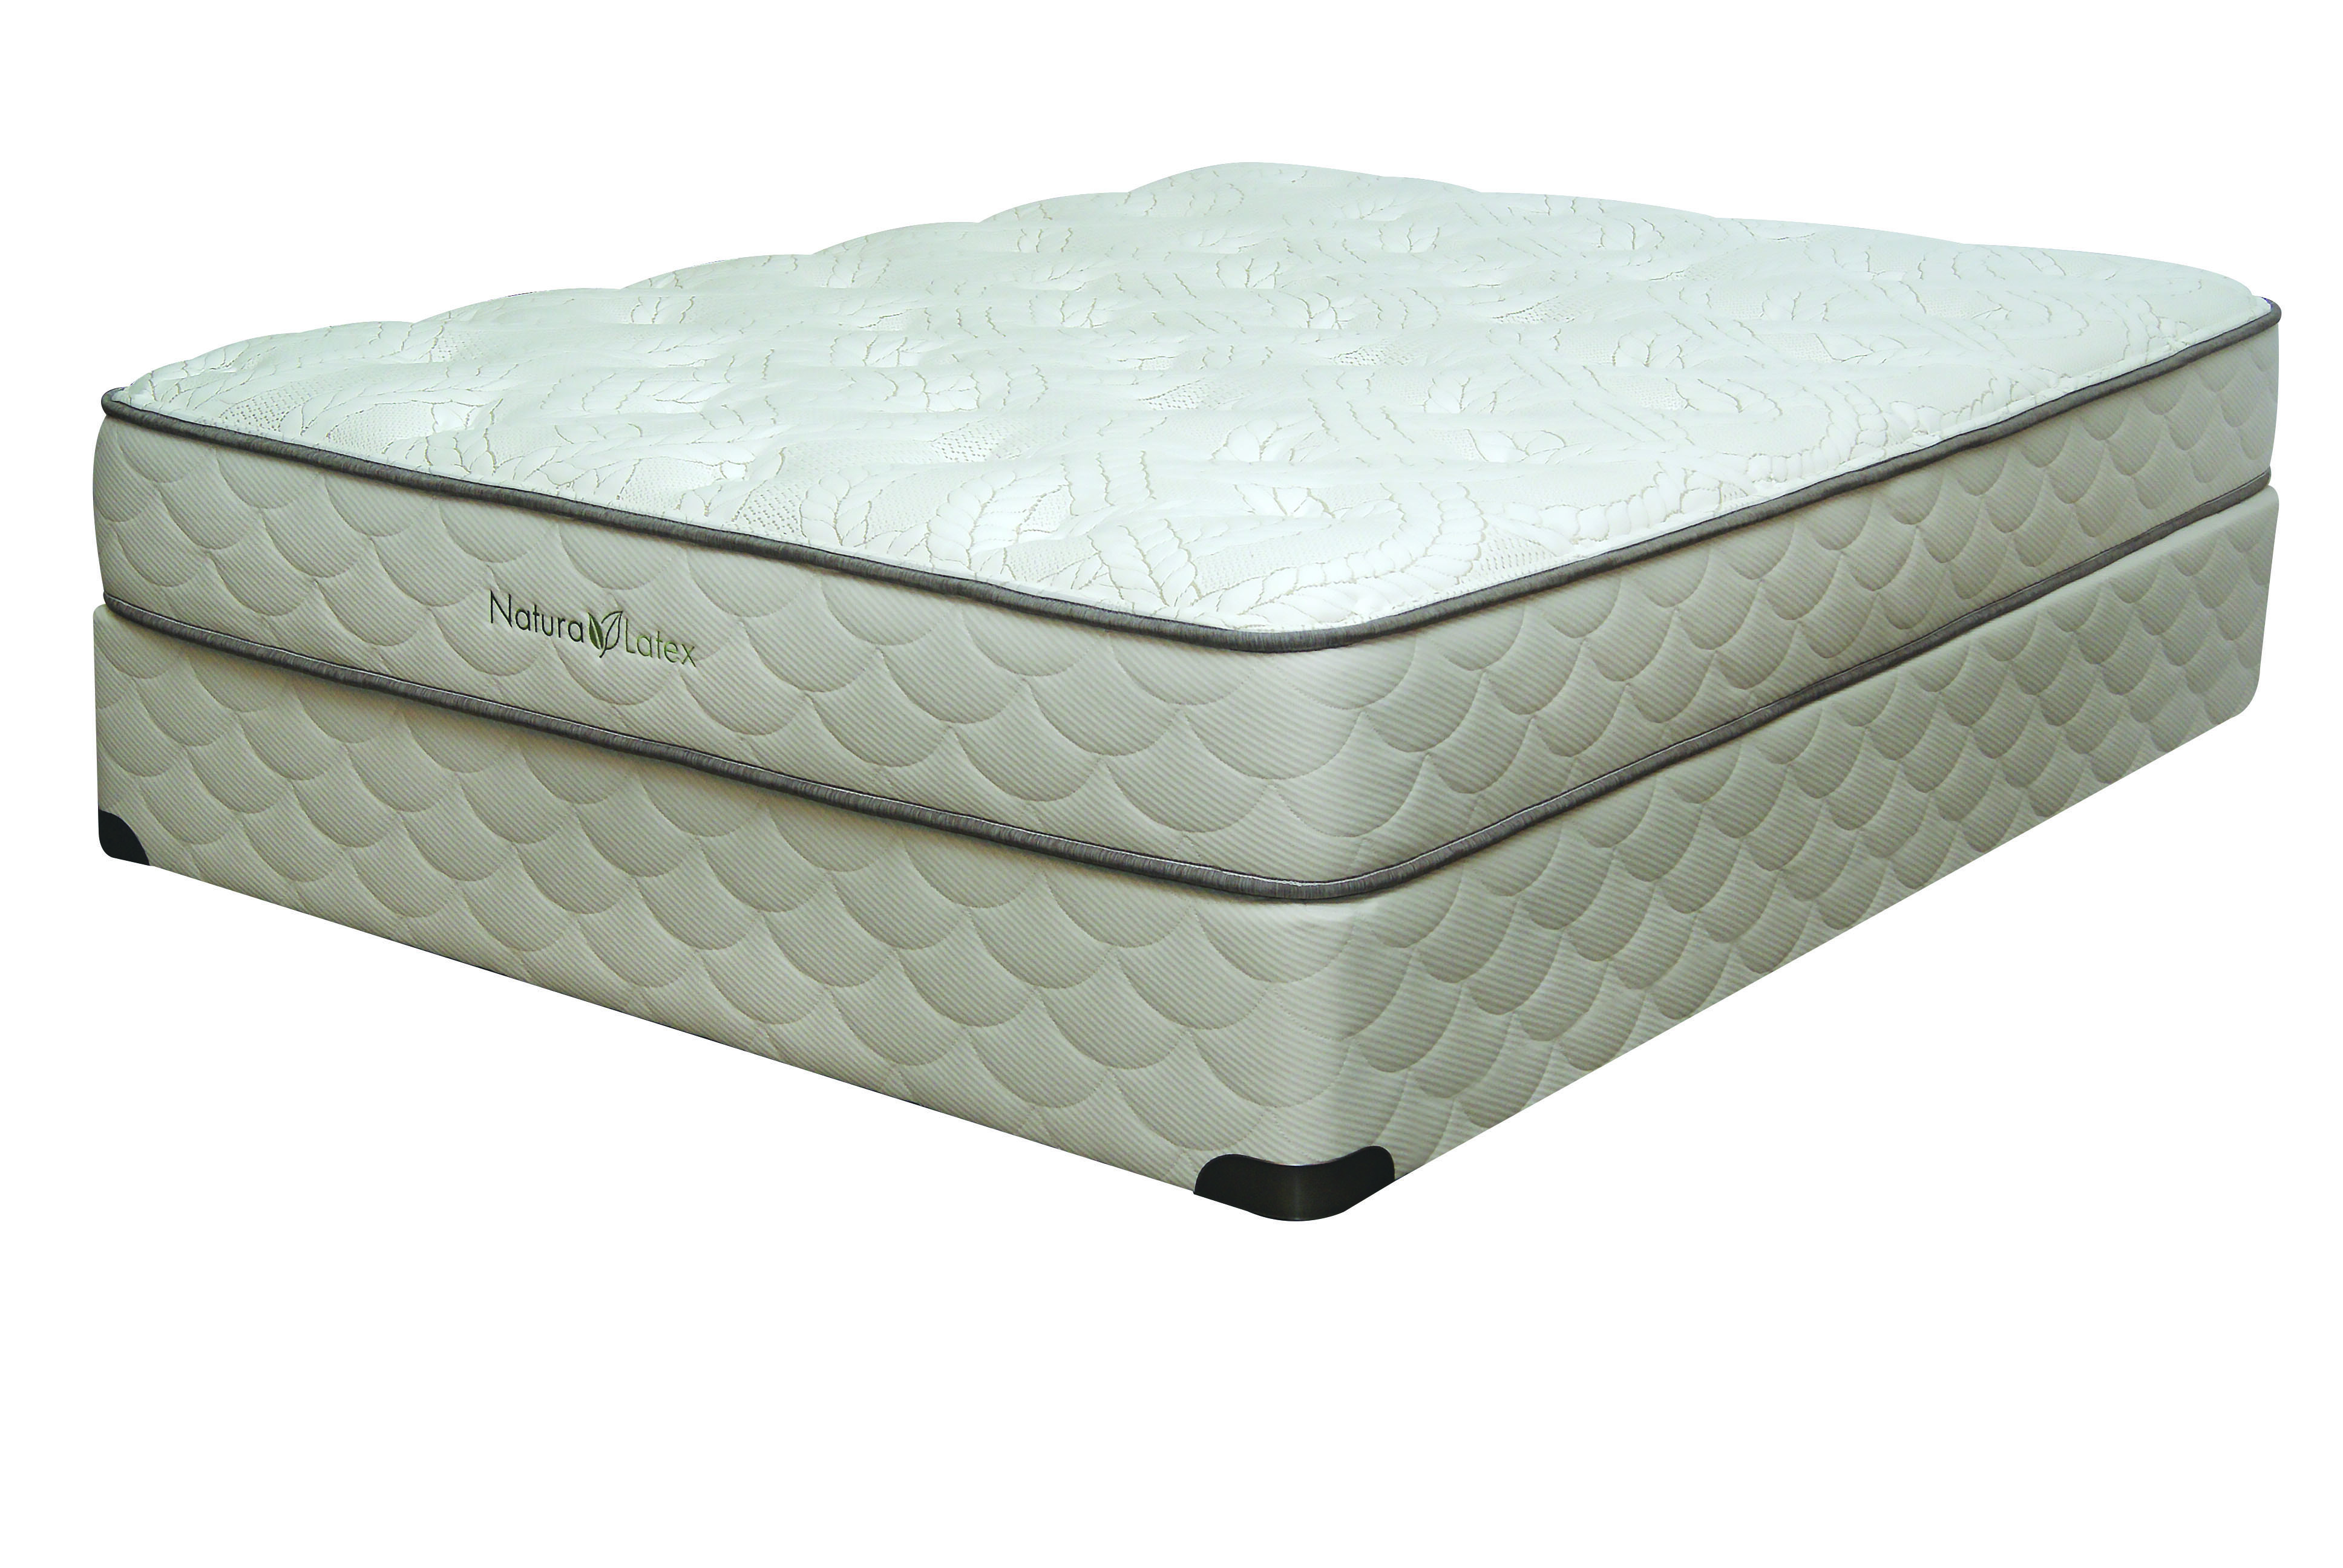 firm latex mattress topper reviews